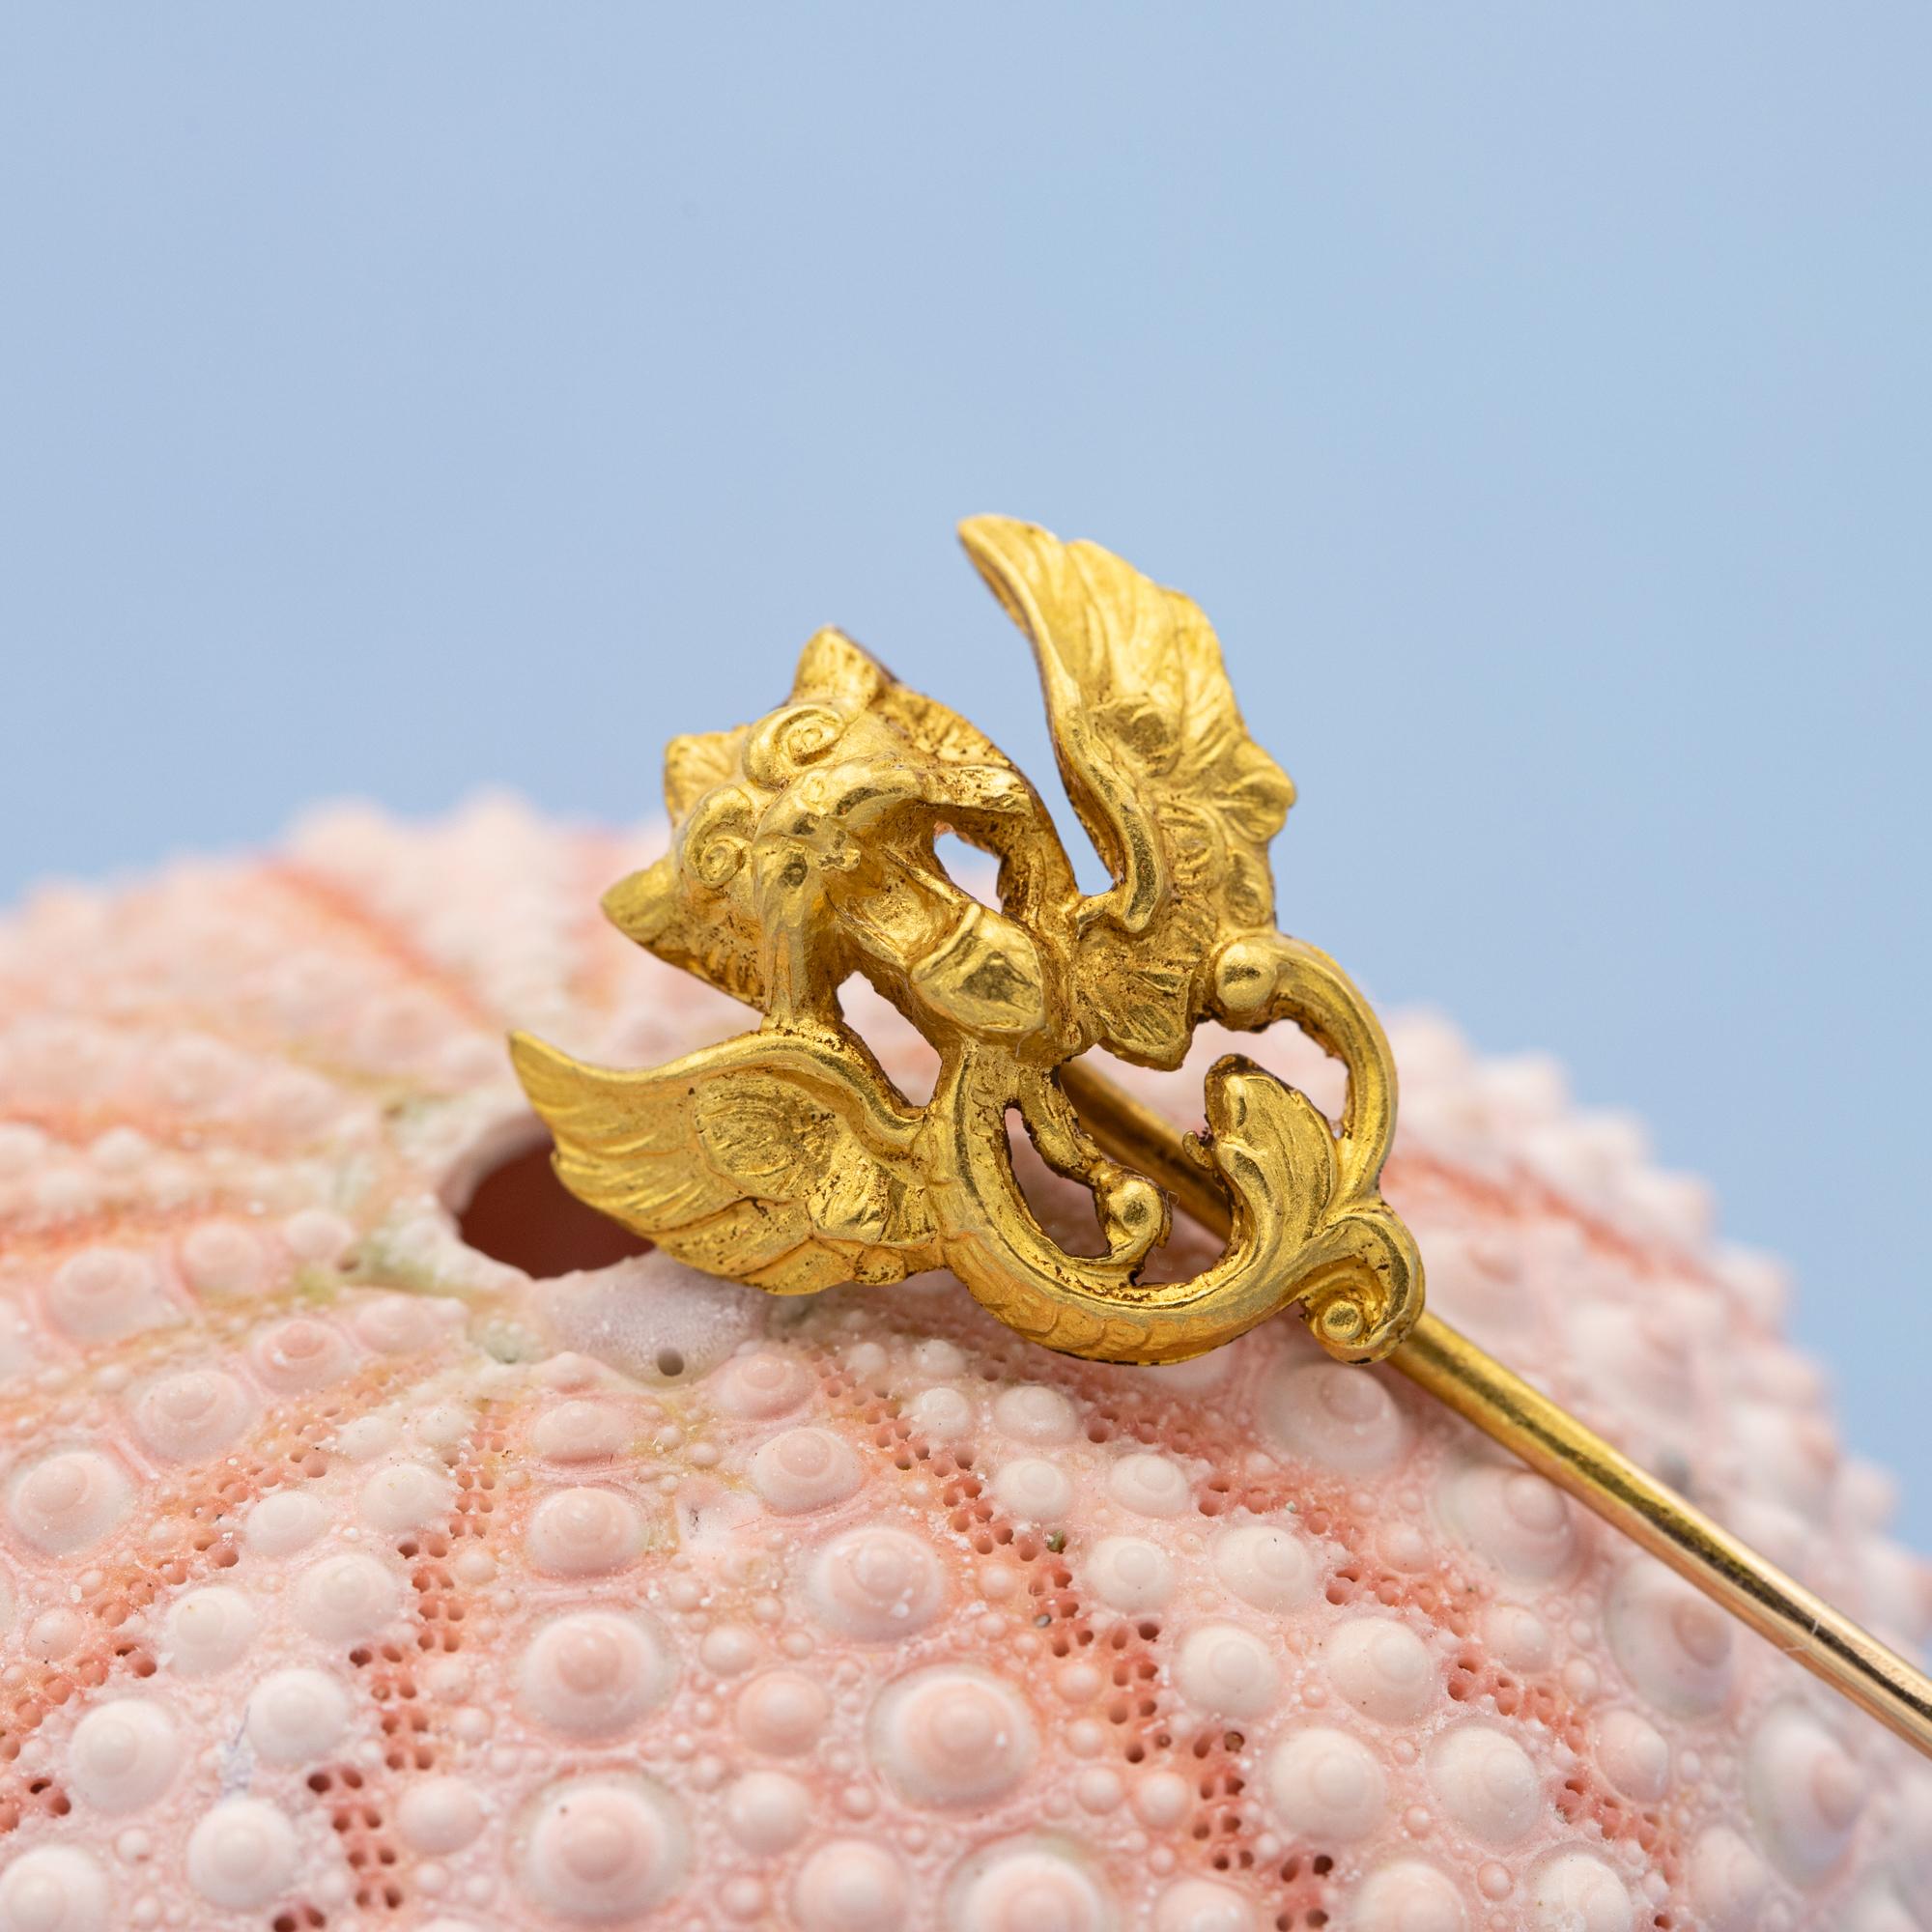 Nous vendons cette magnifique épingle à dragon victorienne en or 18 carats. Ce dragon / aigle / griffon est très détaillé et époustouflant dans la réalité. En outre, cette épingle à nourrice est marquée d'une tête d'aigle française. 

La reine